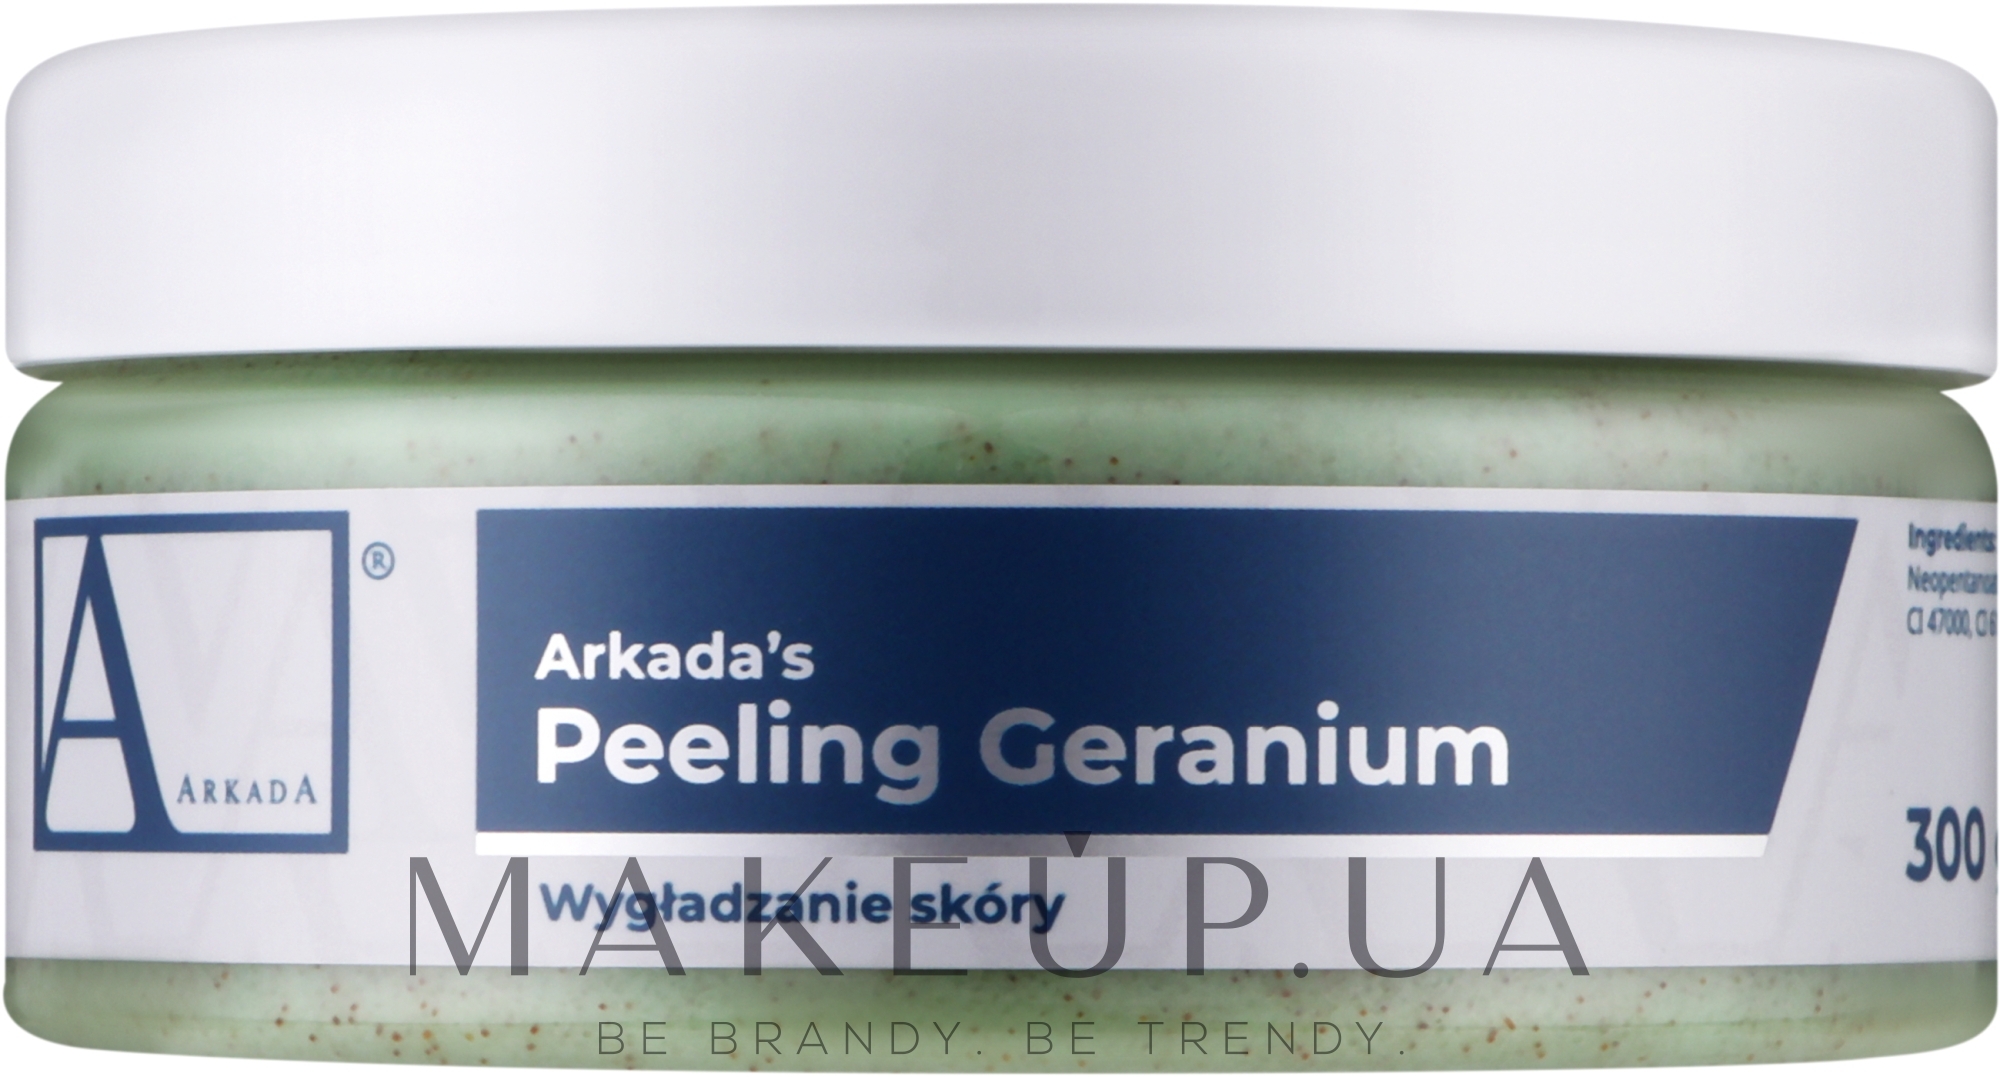 Разглаживающий пилинг с маслом герани - Aarkada Peeling Geranium — фото 300g